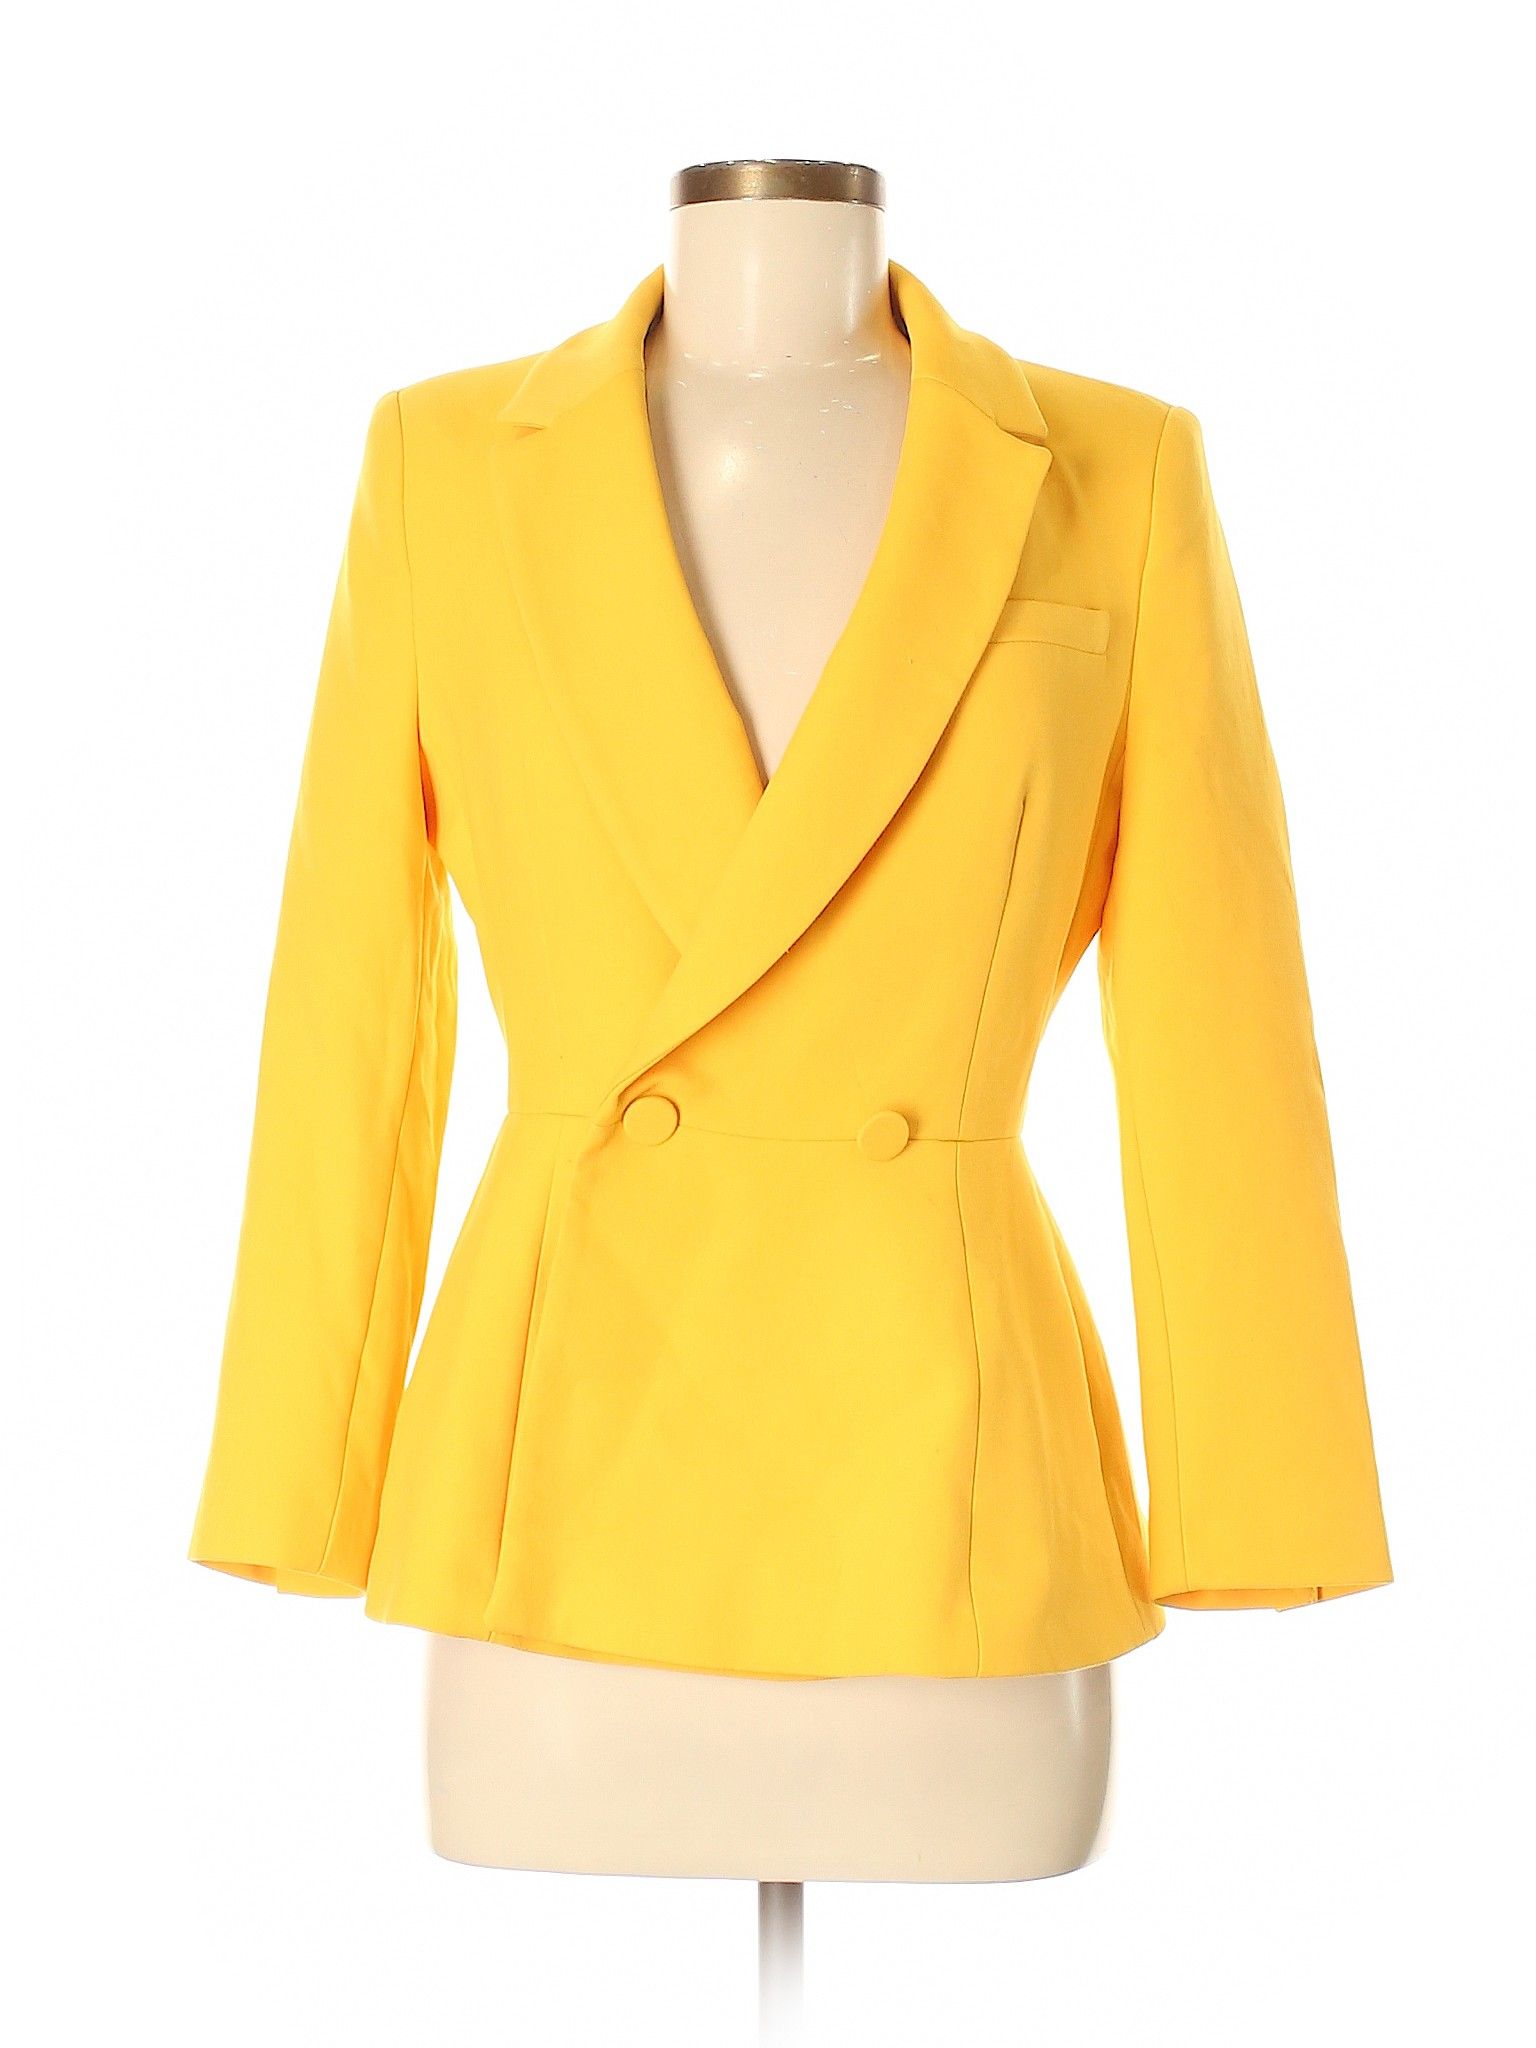 Zara Basic Blazer Size 8: Dark Yellow Women's Jackets & Outerwear - 45503197 | thredUP